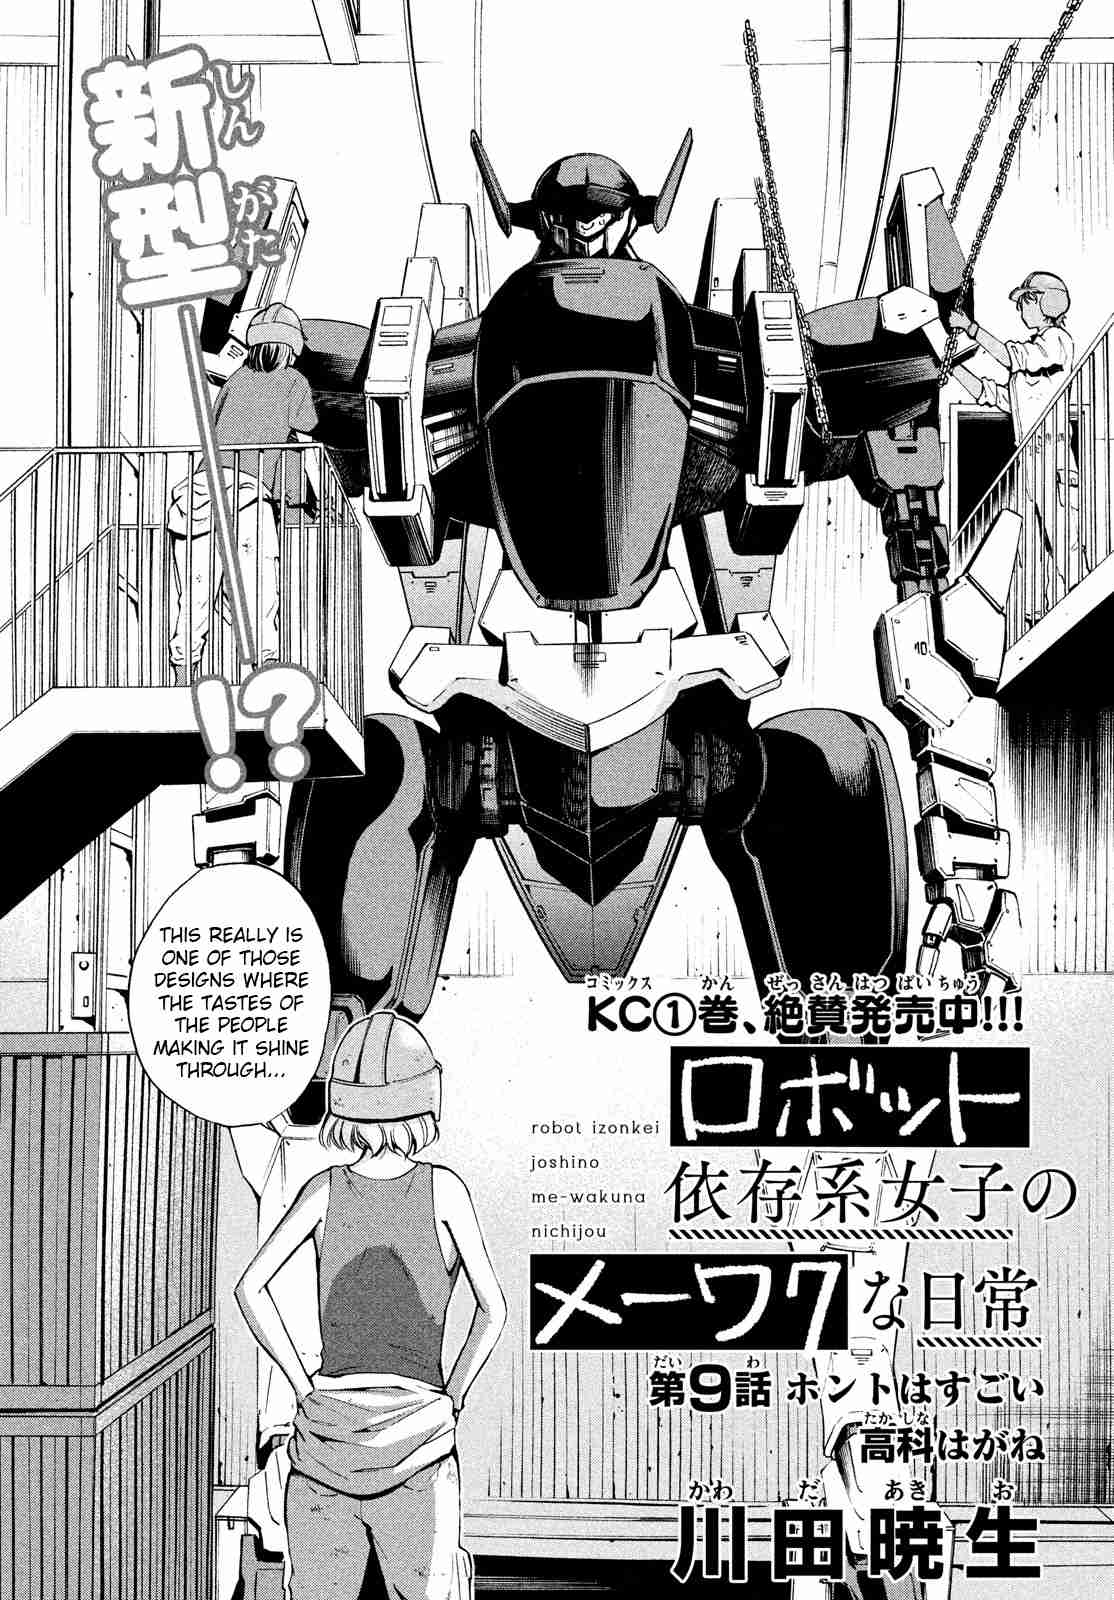 Robot Izonkei Joshi no Meiwaku na Nichijou Vol. 2 Ch. 9 Takashina Hagane really is amazing (part 1)